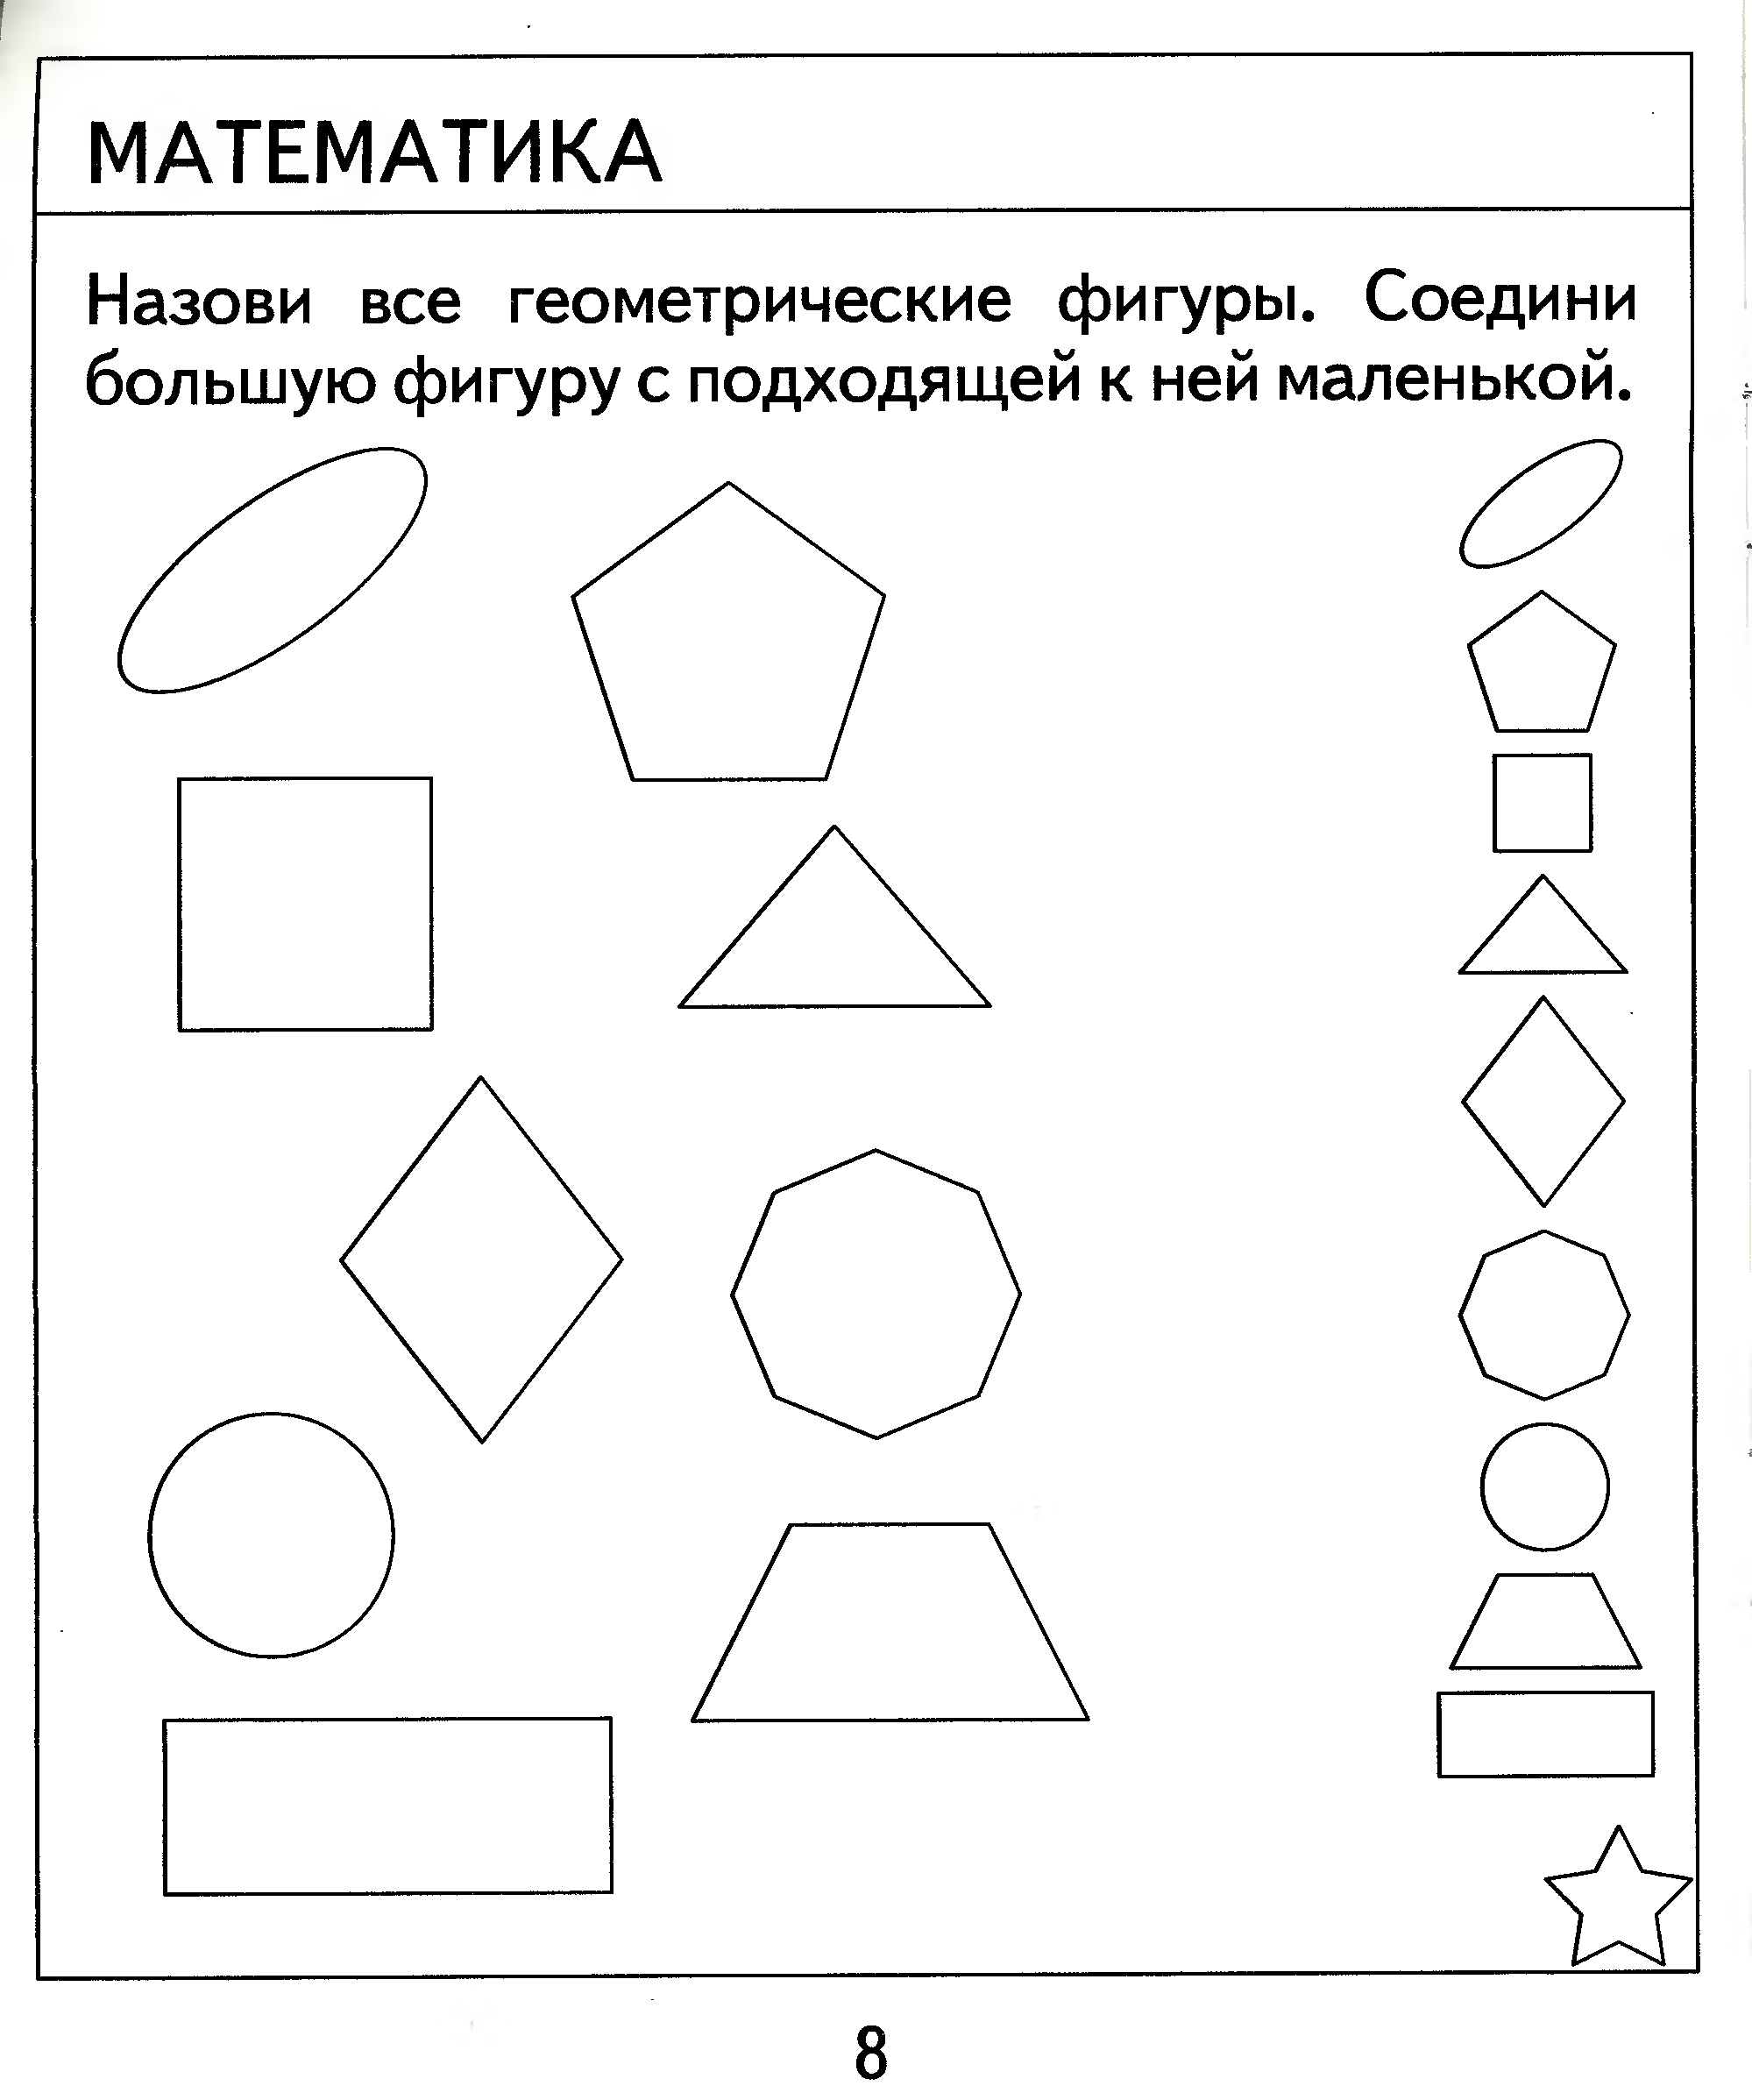 Задание с геометрическими фигурами для дошкольников 6-7 лет